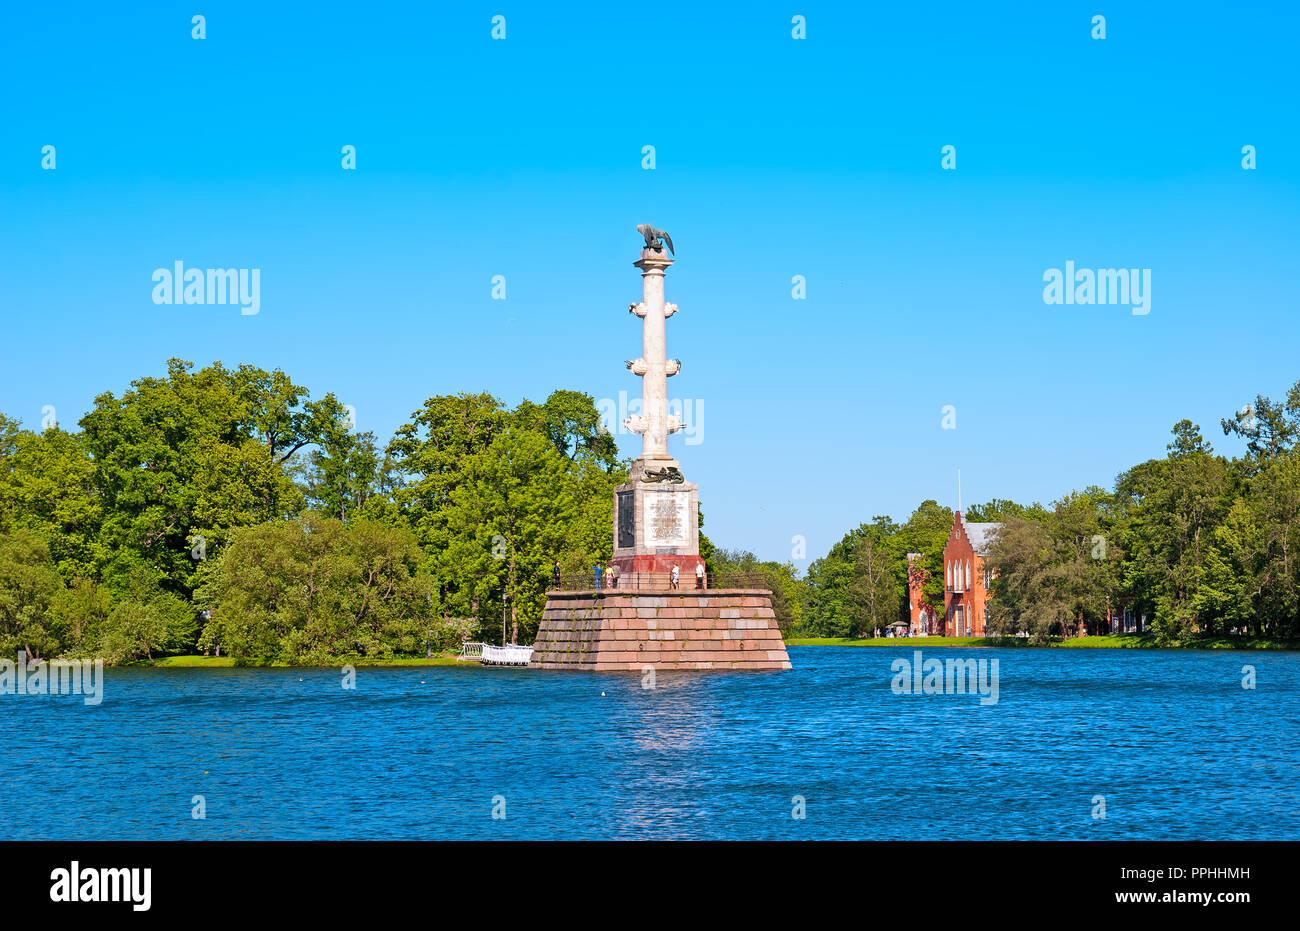 Carskoe Selo, San Pietroburgo, Russia - 7 giugno 2015: la colonna Chesme sul grande stagno del Catherine Park. Il lato destro è Admiralty. Foto Stock